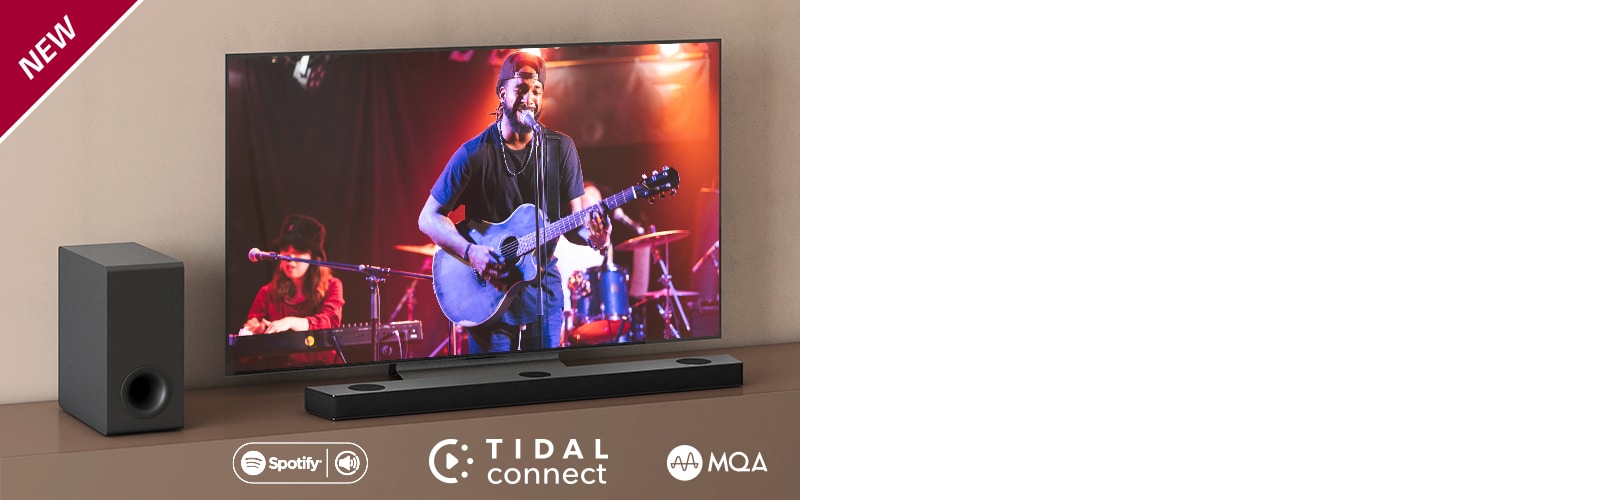 LG TV ir novietots uz brūna plaukta, LG Sound Bar S95QR ir novietota televizora priekšā. Zemo frekvenču pastiprinātājs ir novietots televizora kreisajā pusē. TV ekrānā redzama koncerta aina. Atzīme “Jaunums” ir redzama augšējā kreisajā stūrī.